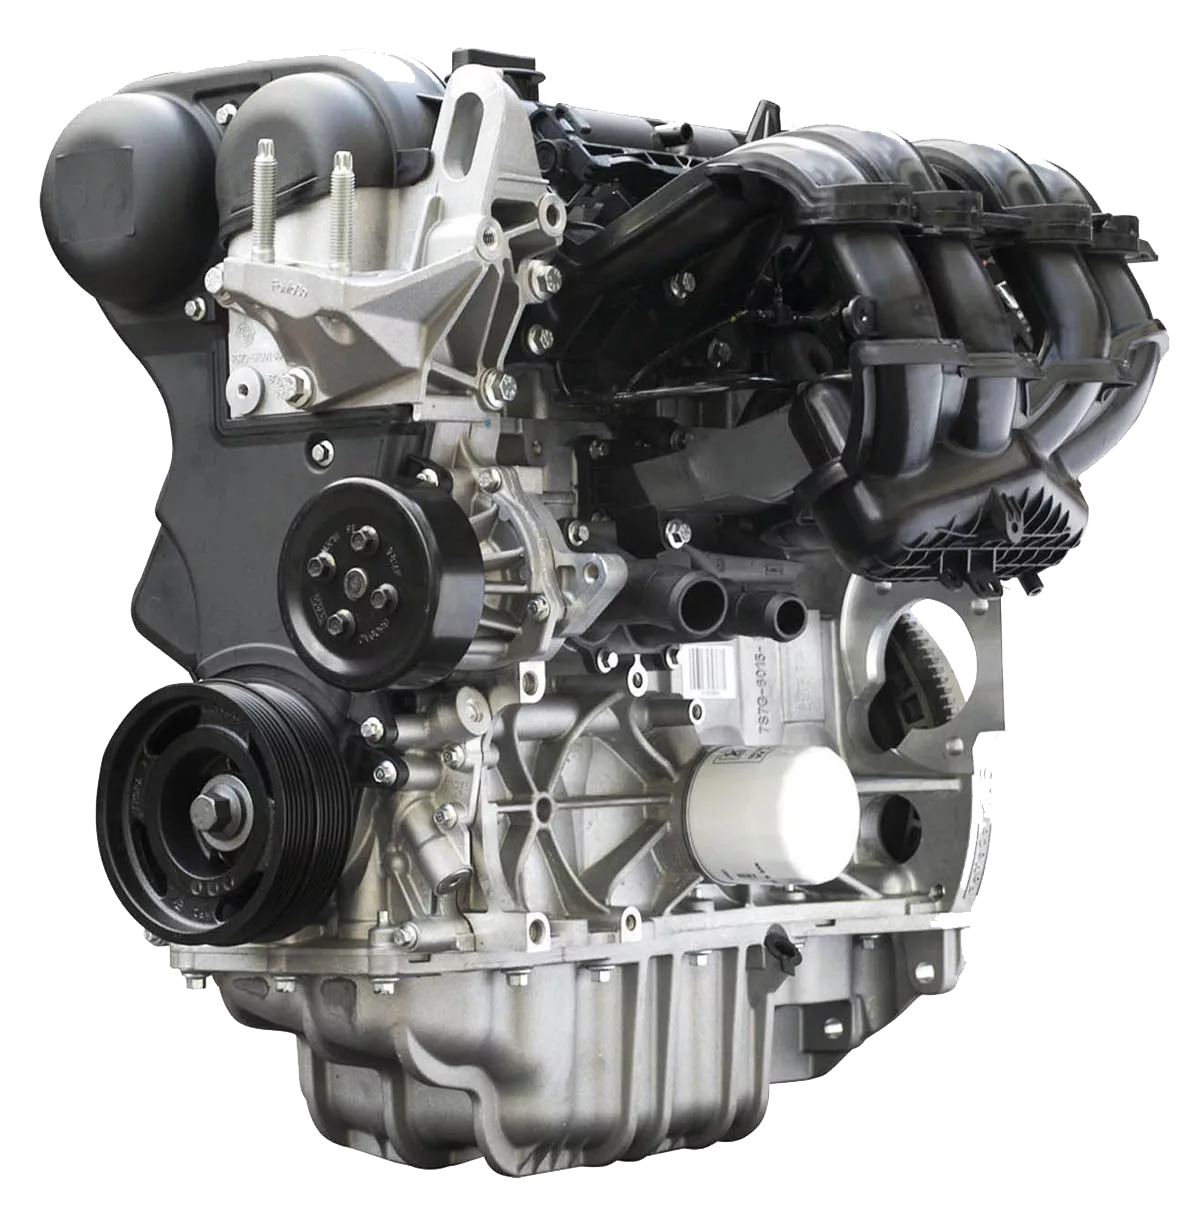 Двигатель Форд фокус 1.6 Duratec. Duratec 1.6 ti-VCT 115 Л.С. Двигатель Форд фокус 1 1.6. Мотор Форд фокус 2 1.6 100 л.с.